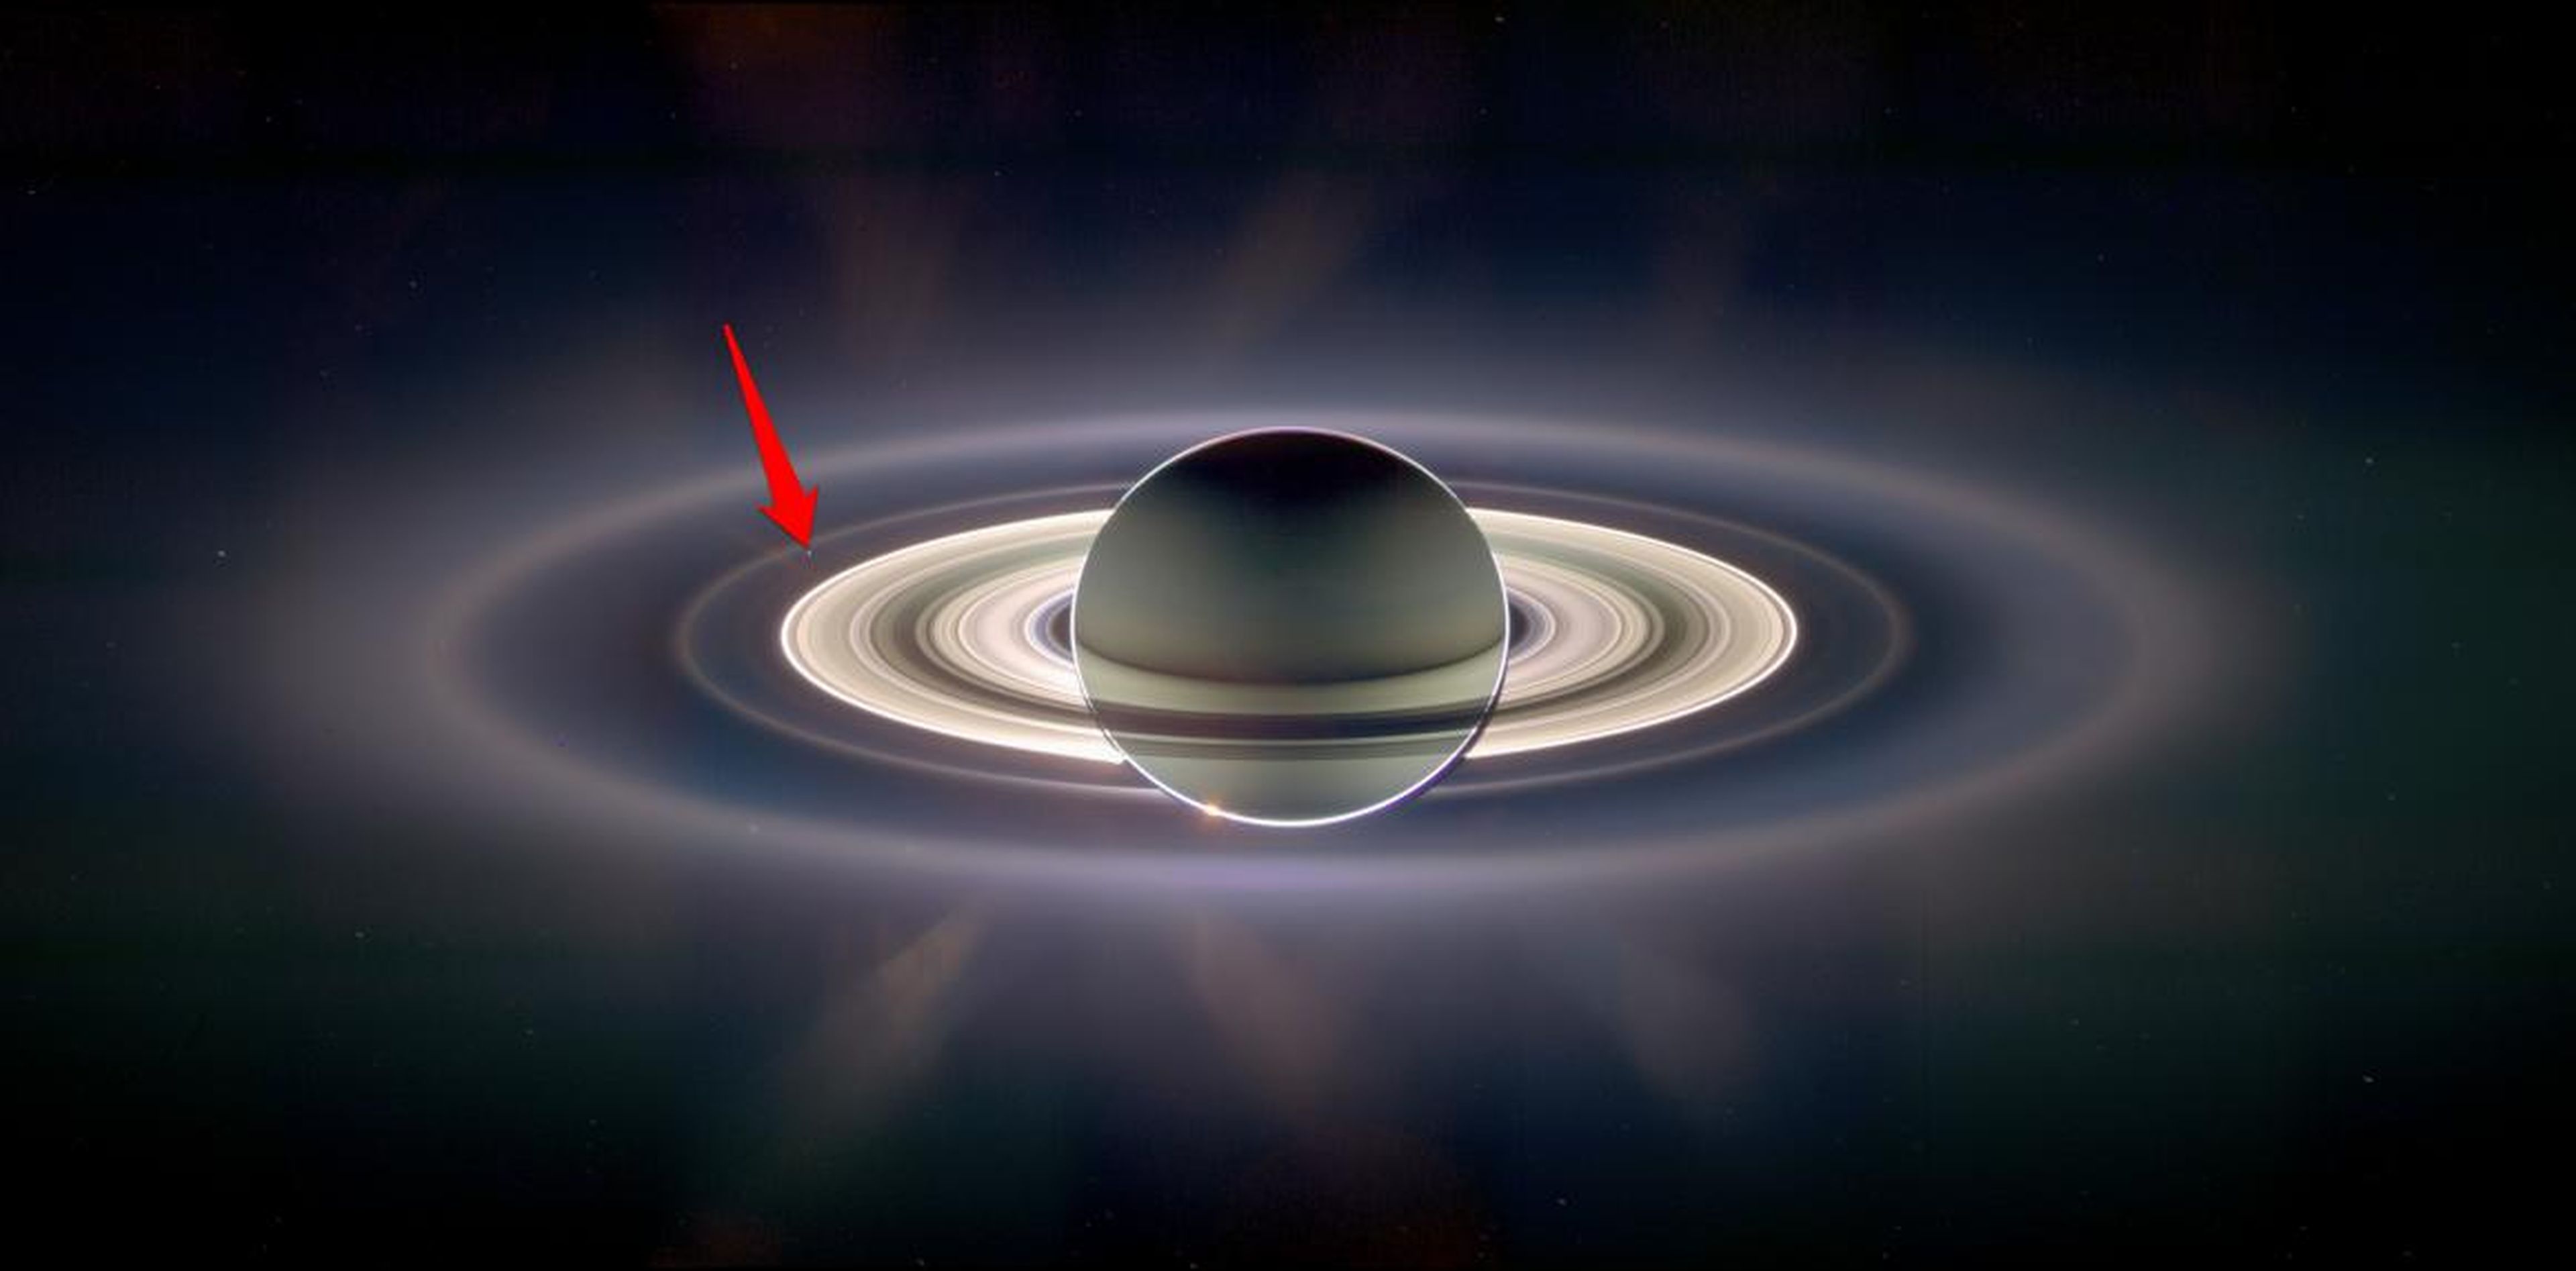 Vista desde Saturno, la Tierra parece desaparecer en el resplandor brillante de los anillos de hielo del gigante gaseoso